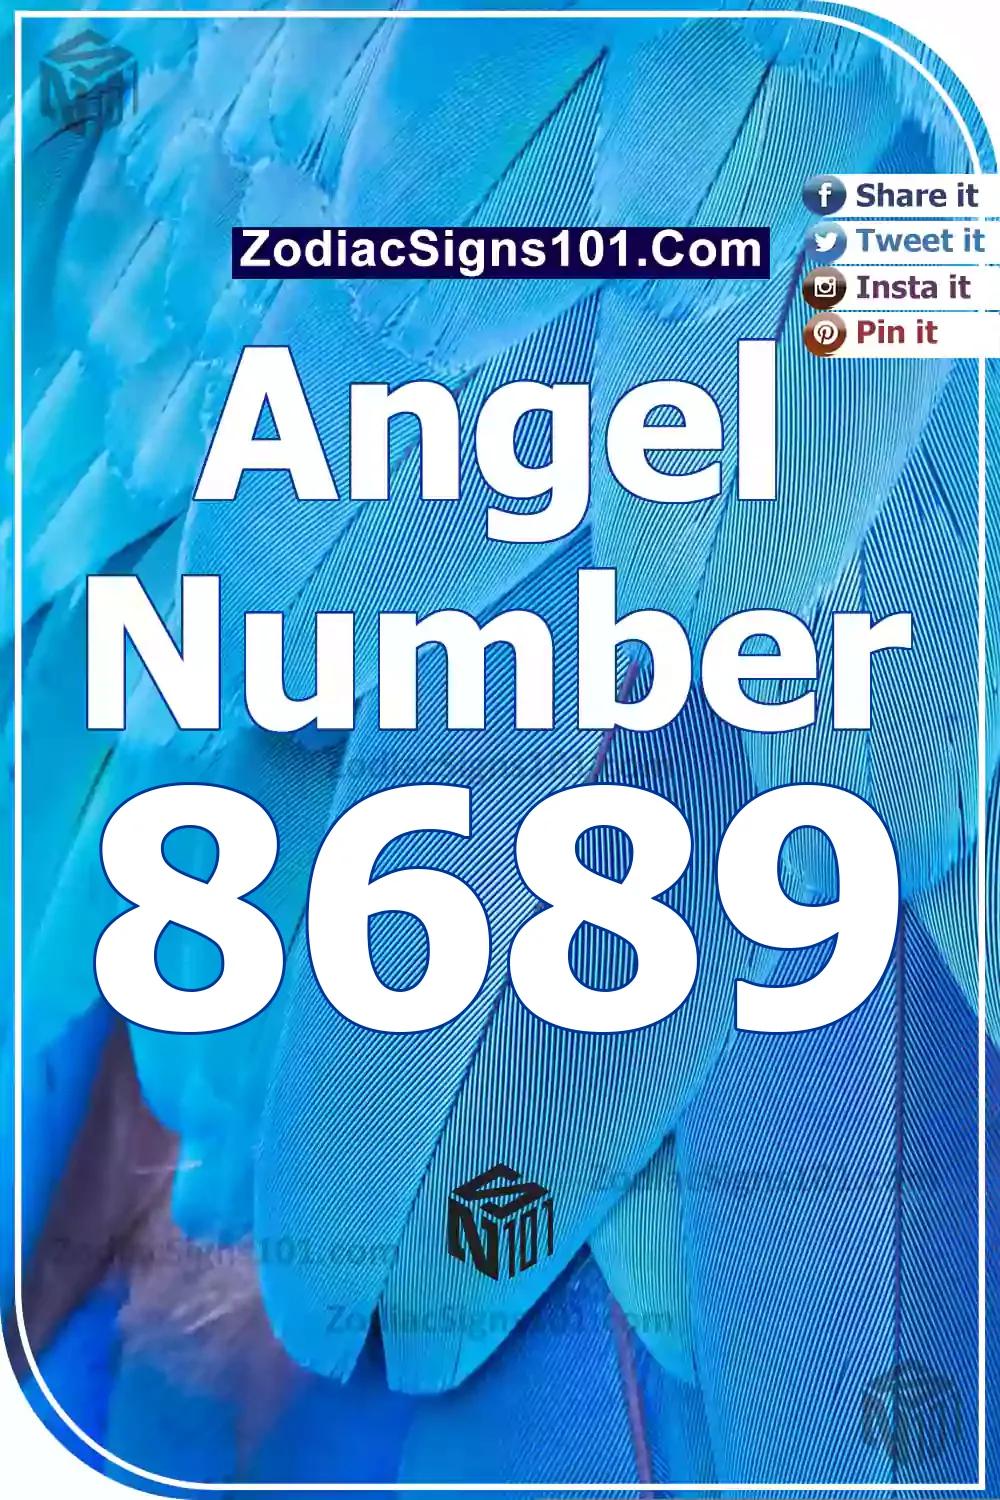 8689 Angelo skaičiaus dvasinė prasmė ir reikšmė – Zodiako ženklai101